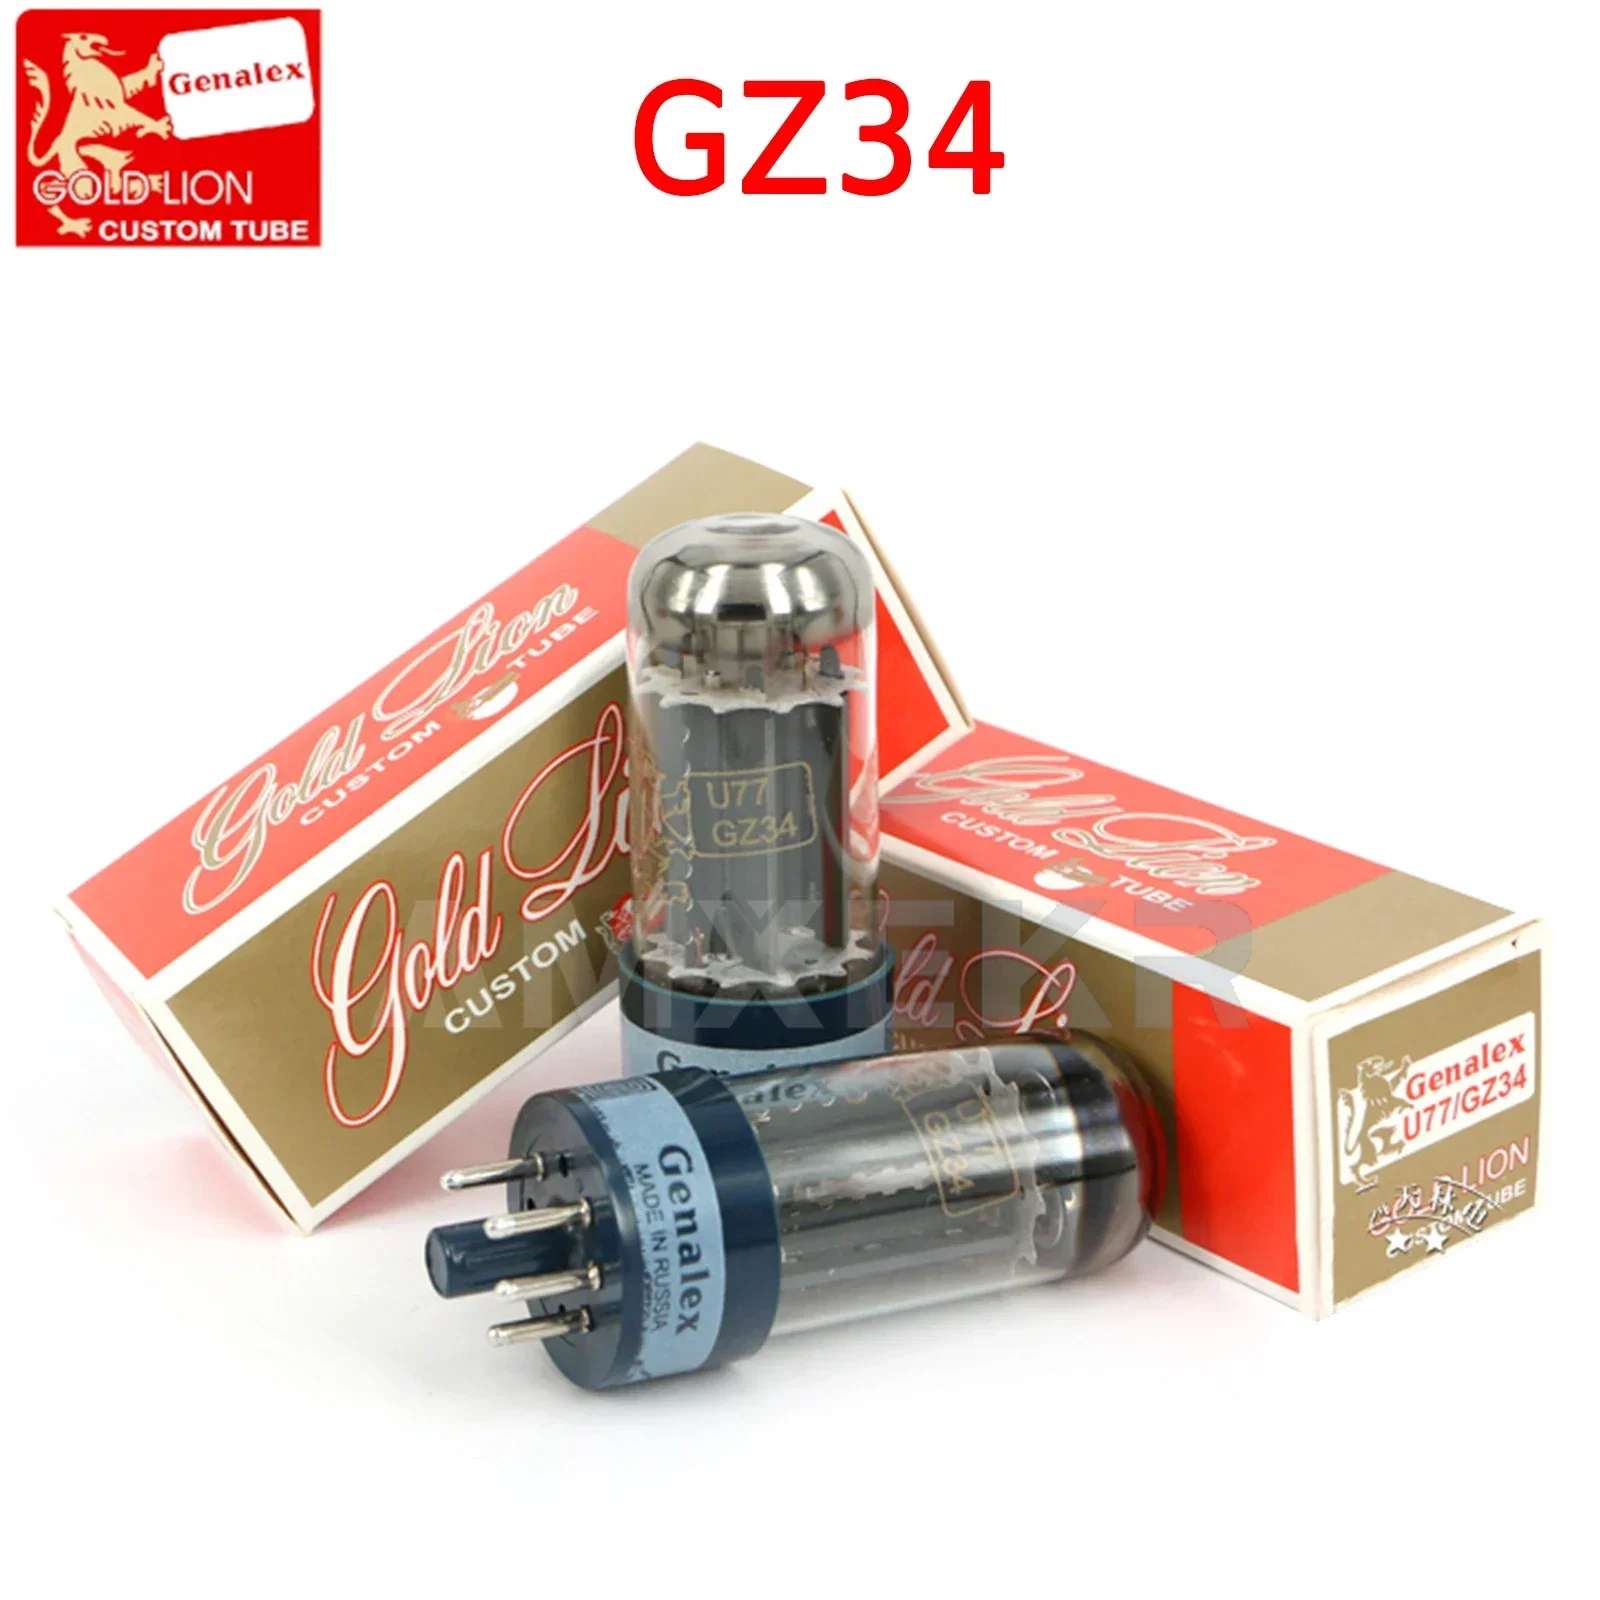 

Электронная трубка GOLD LION GZ34 U77 сменная 5AR4/274B/5U4G вакуумная трубка оригинальная Заводская точность подходит для усилителя